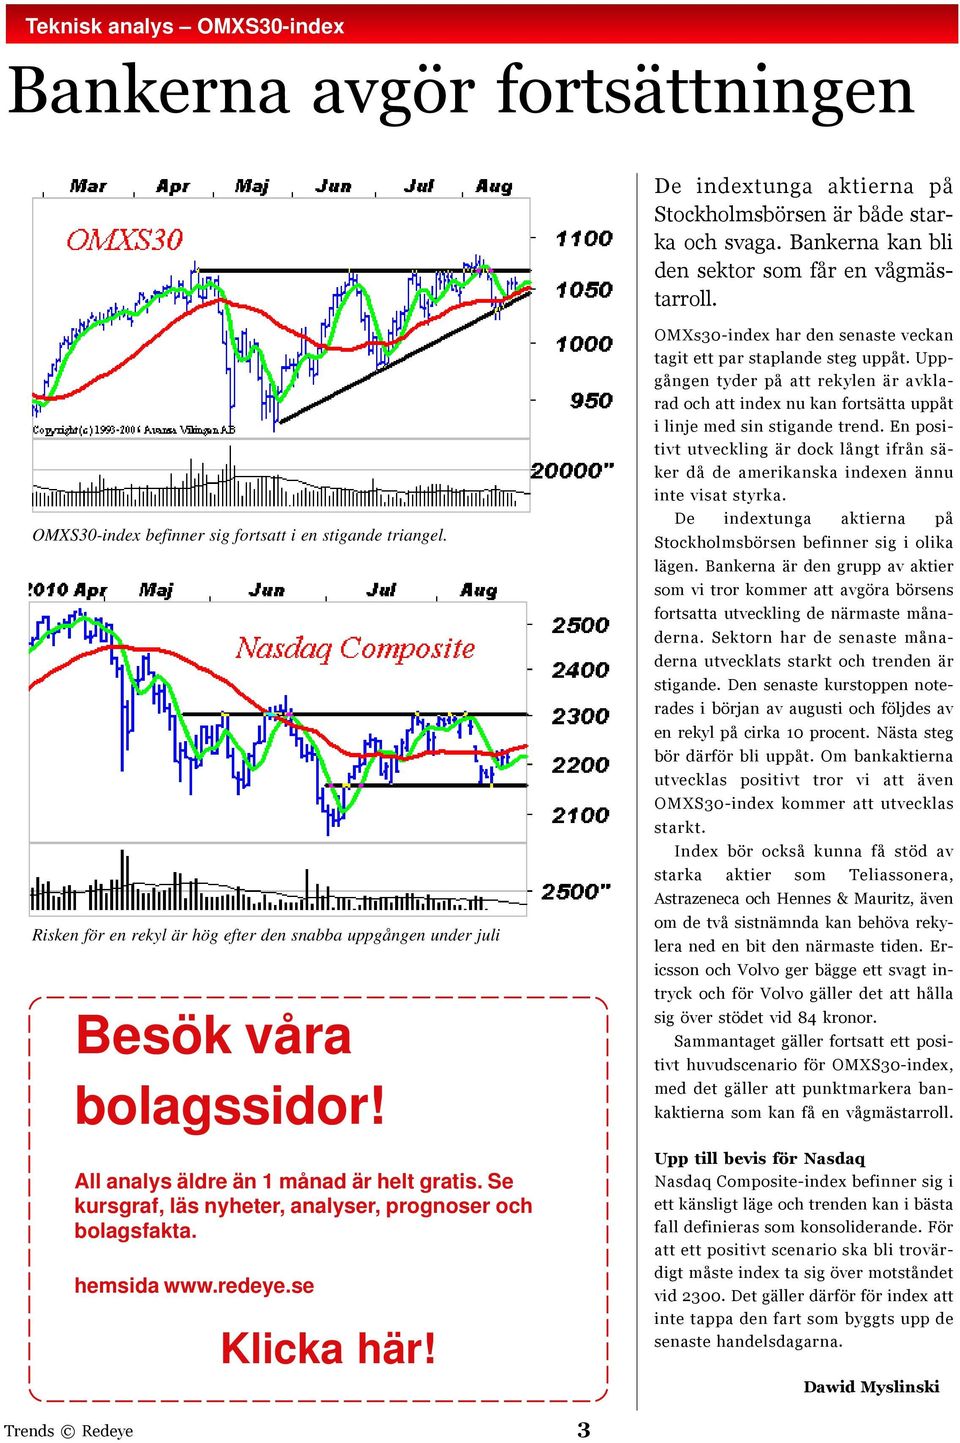 Se kursgraf, läs nyheter, analyser, prognoser och bolagsfakta. hemsida www.redeye.se Klicka här! OMXs30-index har den senaste veckan tagit ett par staplande steg uppåt.